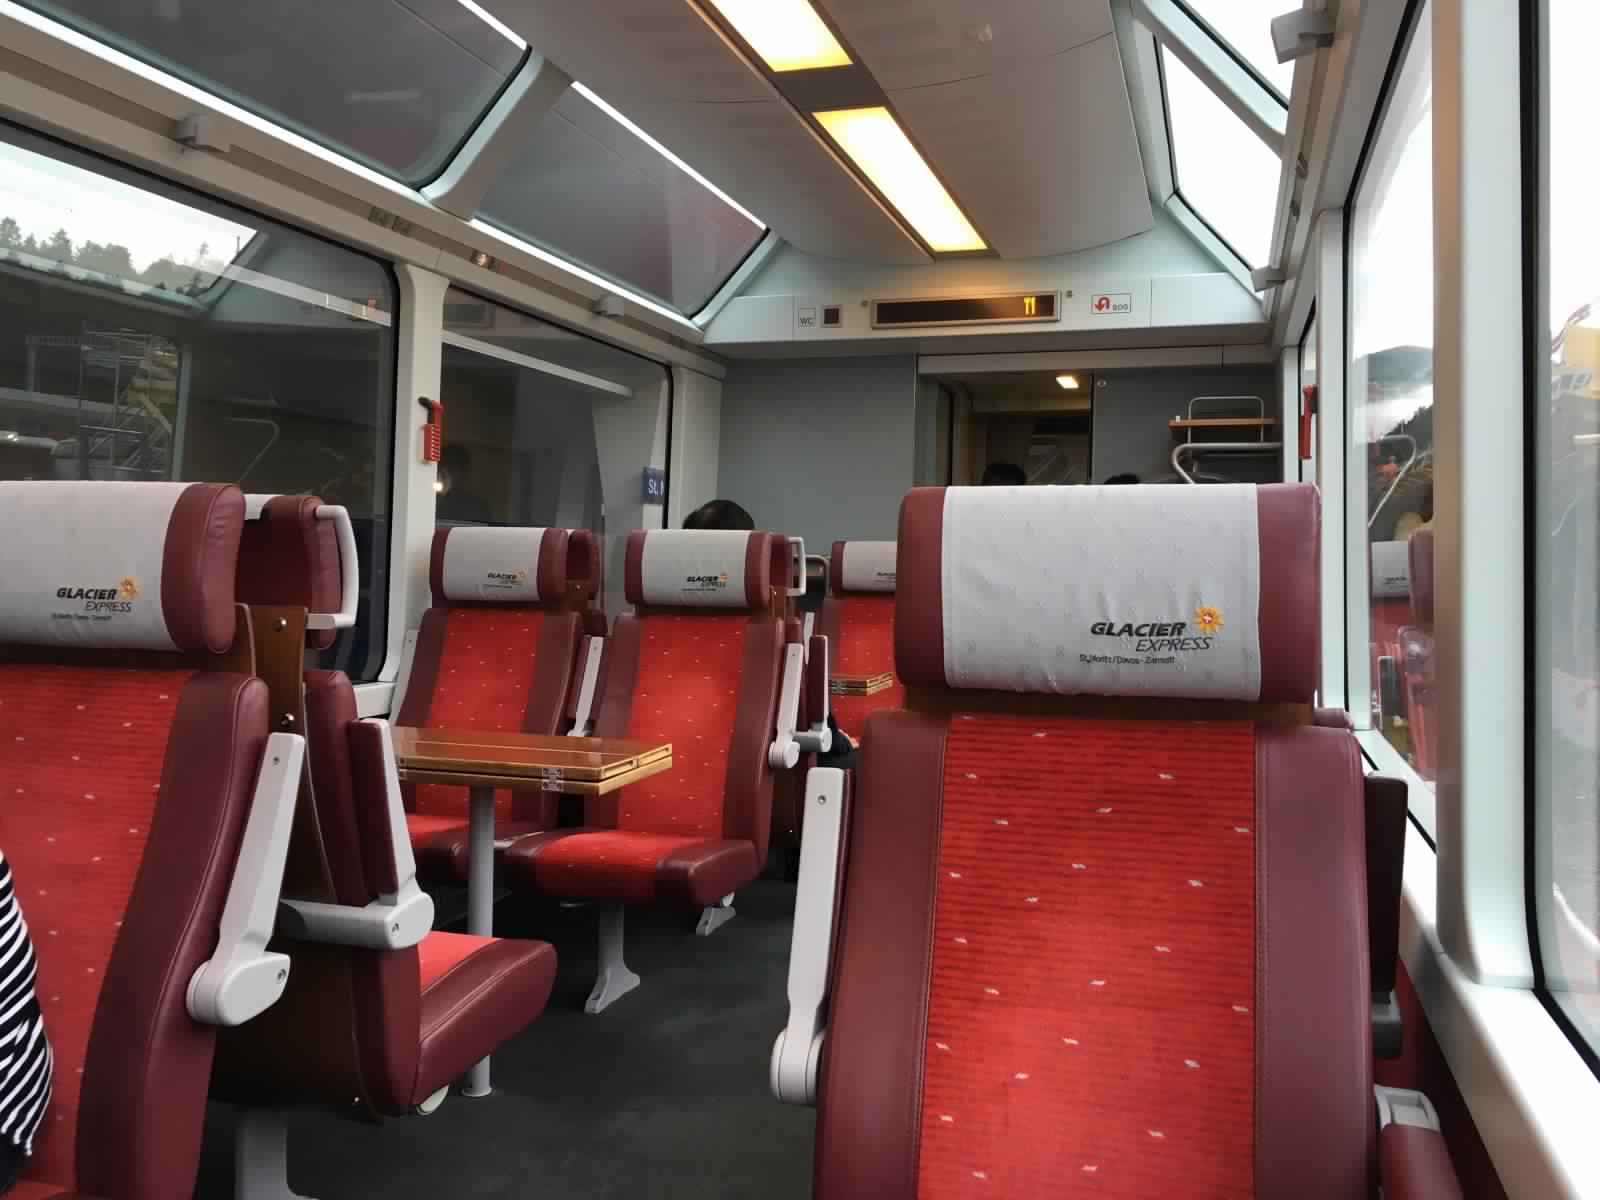 "بالصور" جولة مع قطار جلاسير إكسبريس عبر جبال اﻷلب السويسرية 28